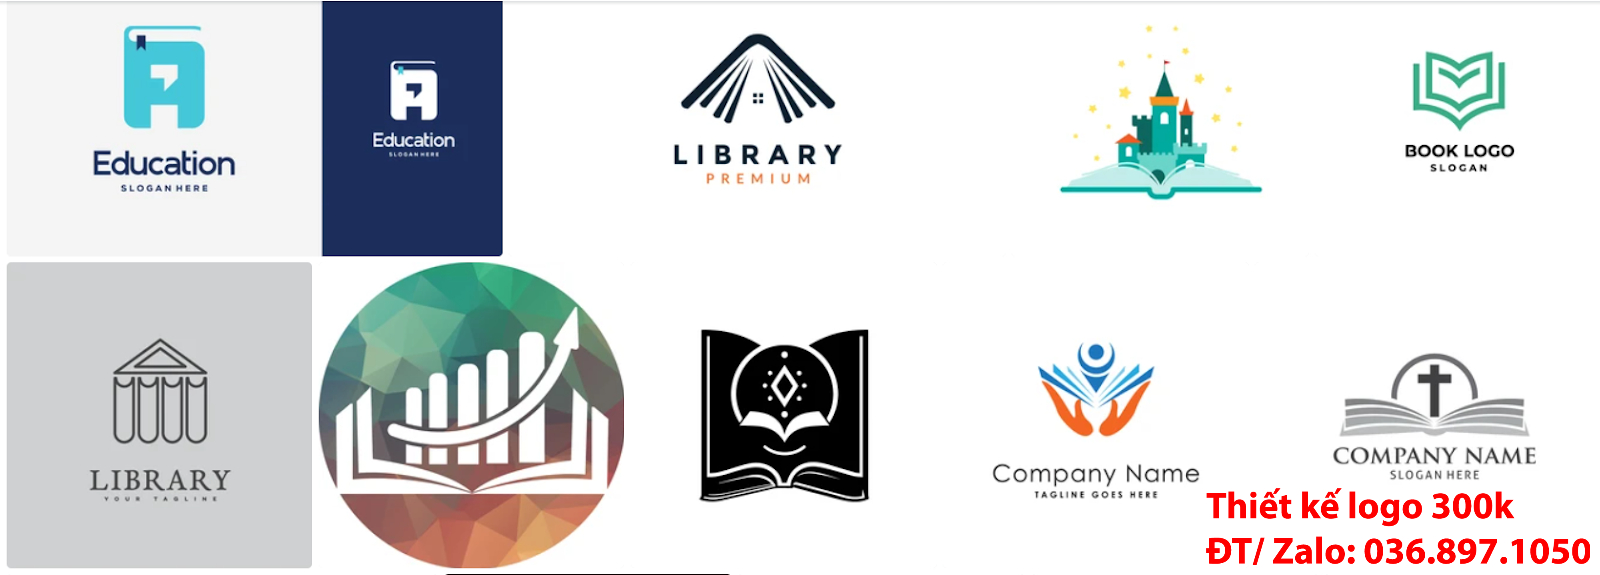 Tạo Mẫu logo nhà sách đẹp miễn phí chất lượng uy tín và chuyên nghiệp